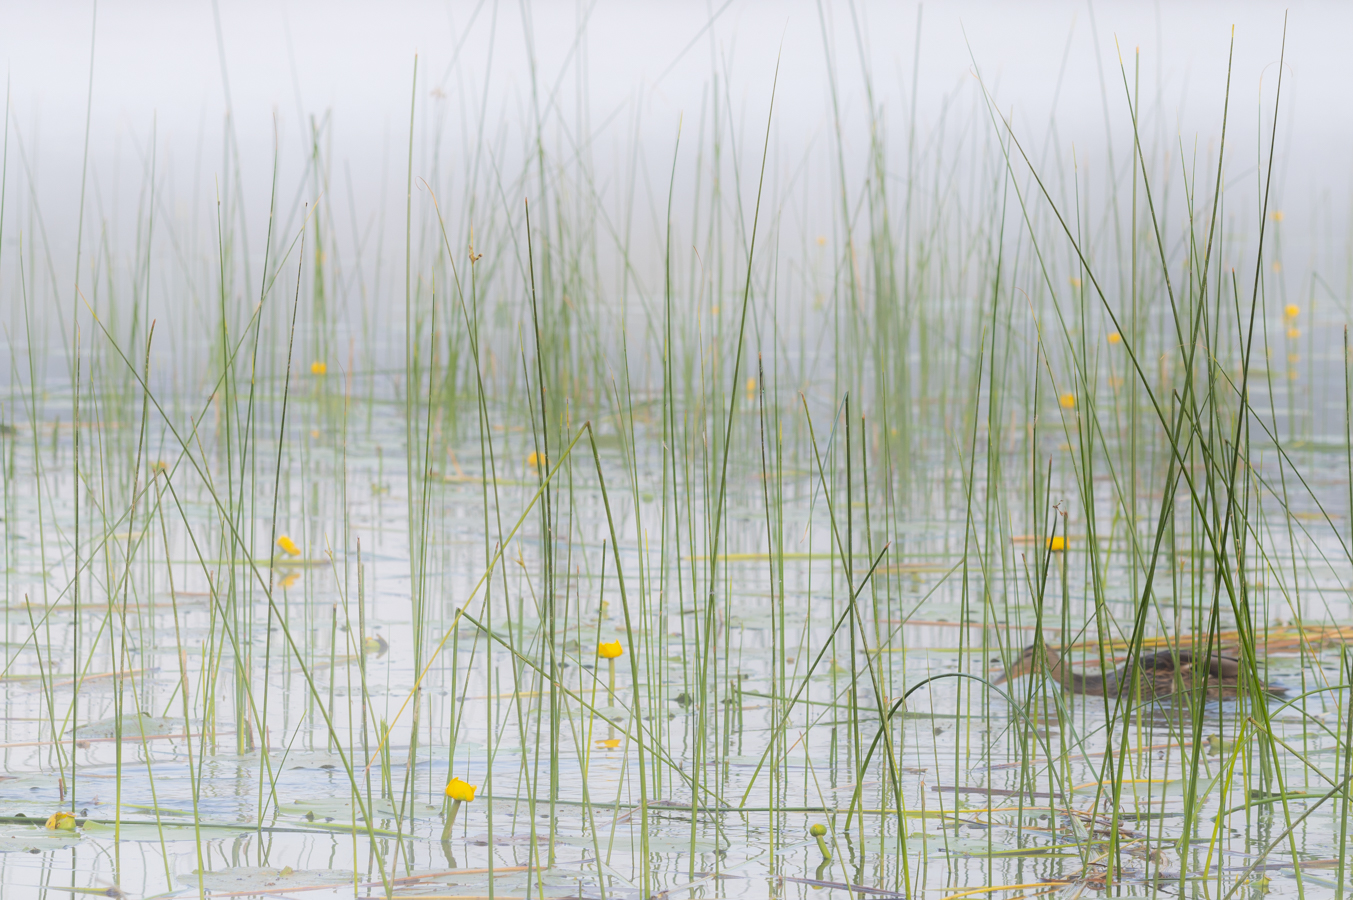 Photographie du Lac de Remoray utilisée pour illustrer l'article "trépied ou pas trépied. Pour ma série "Mes astuces de photographe de paysages"